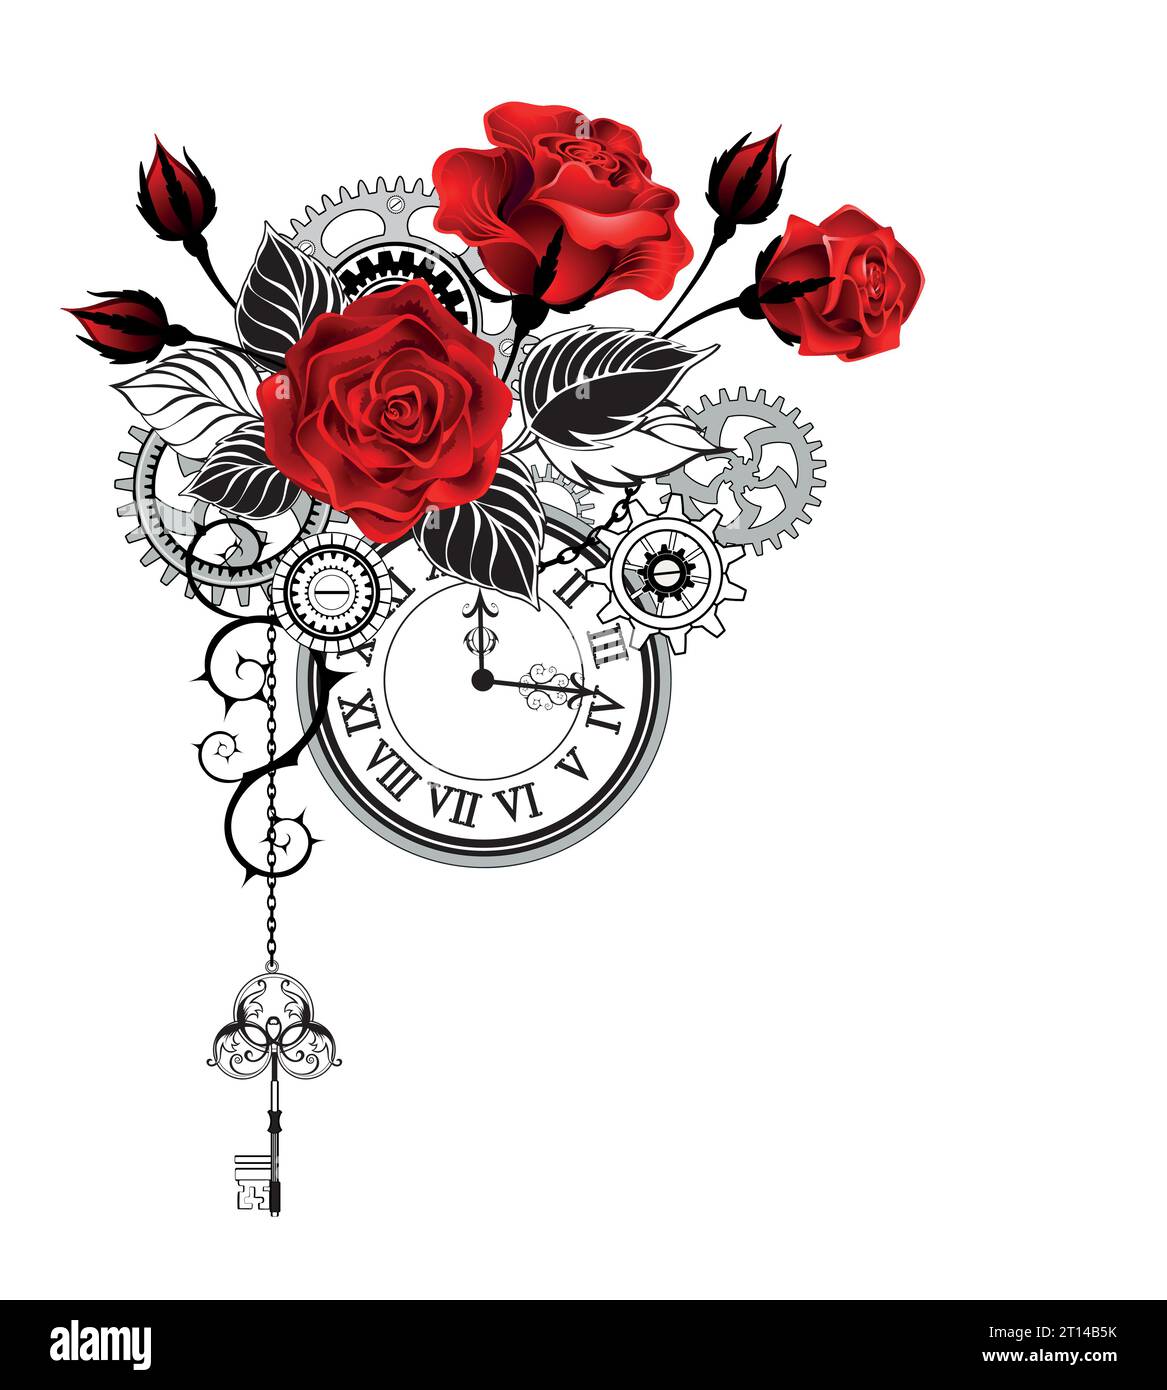 Une composition élégante de roses rouges, fleuries, dessinées artistiquement, décorées de feuilles noires avec une horloge de contour, des engrenages et une clé sur fond blanc Illustration de Vecteur